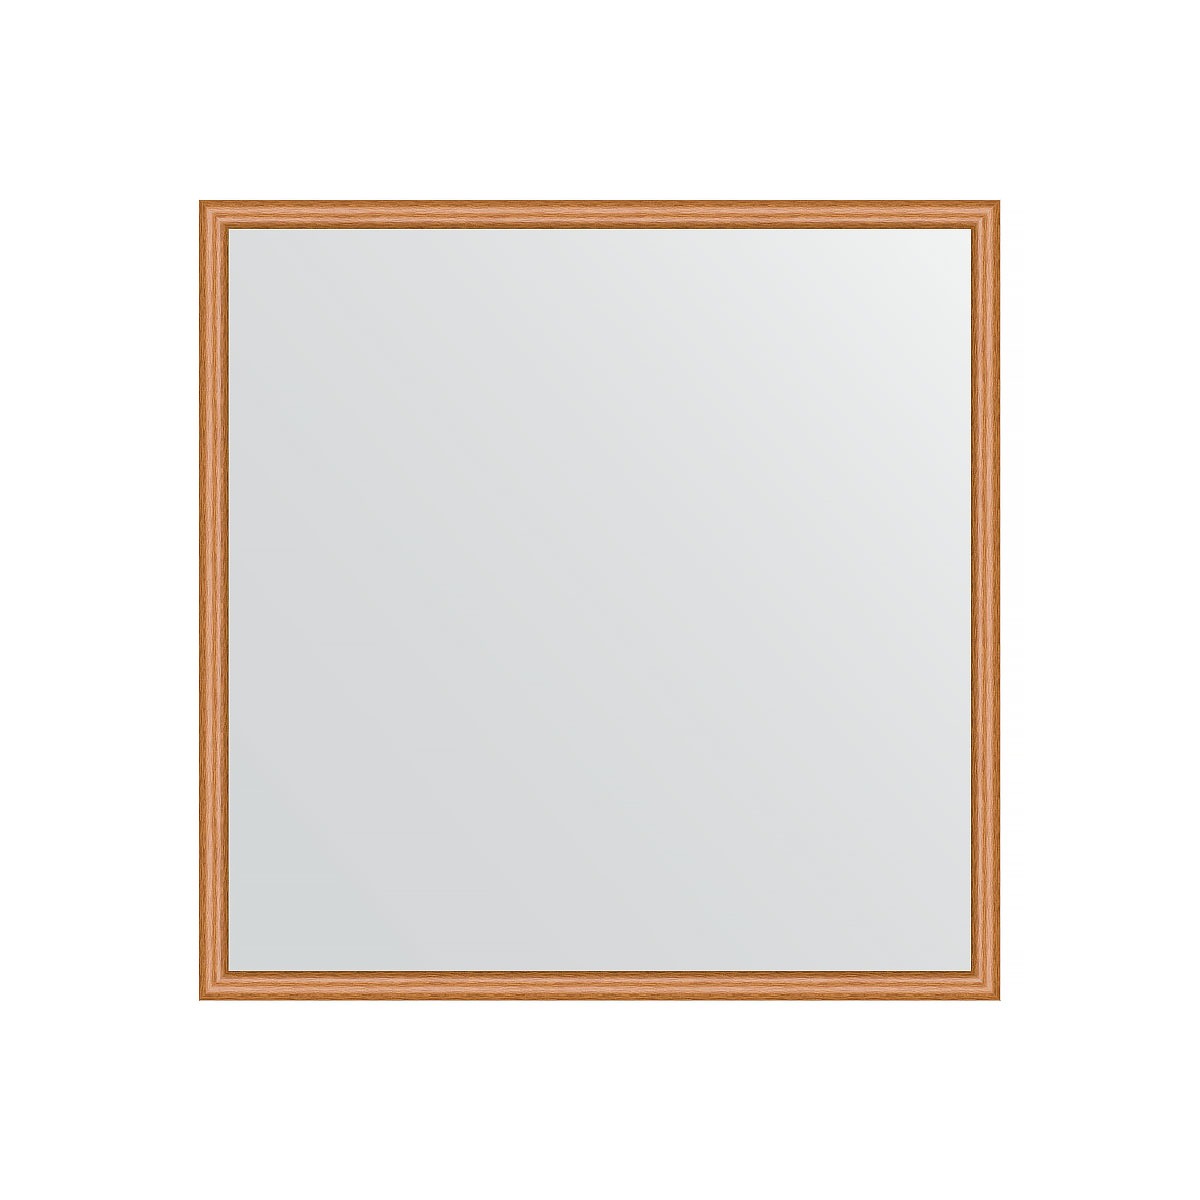 Зеркало в багетной раме Evoform вишня 22 мм 68х68 см зеркало в багетной раме evoform сосна 22 мм 68х68 см